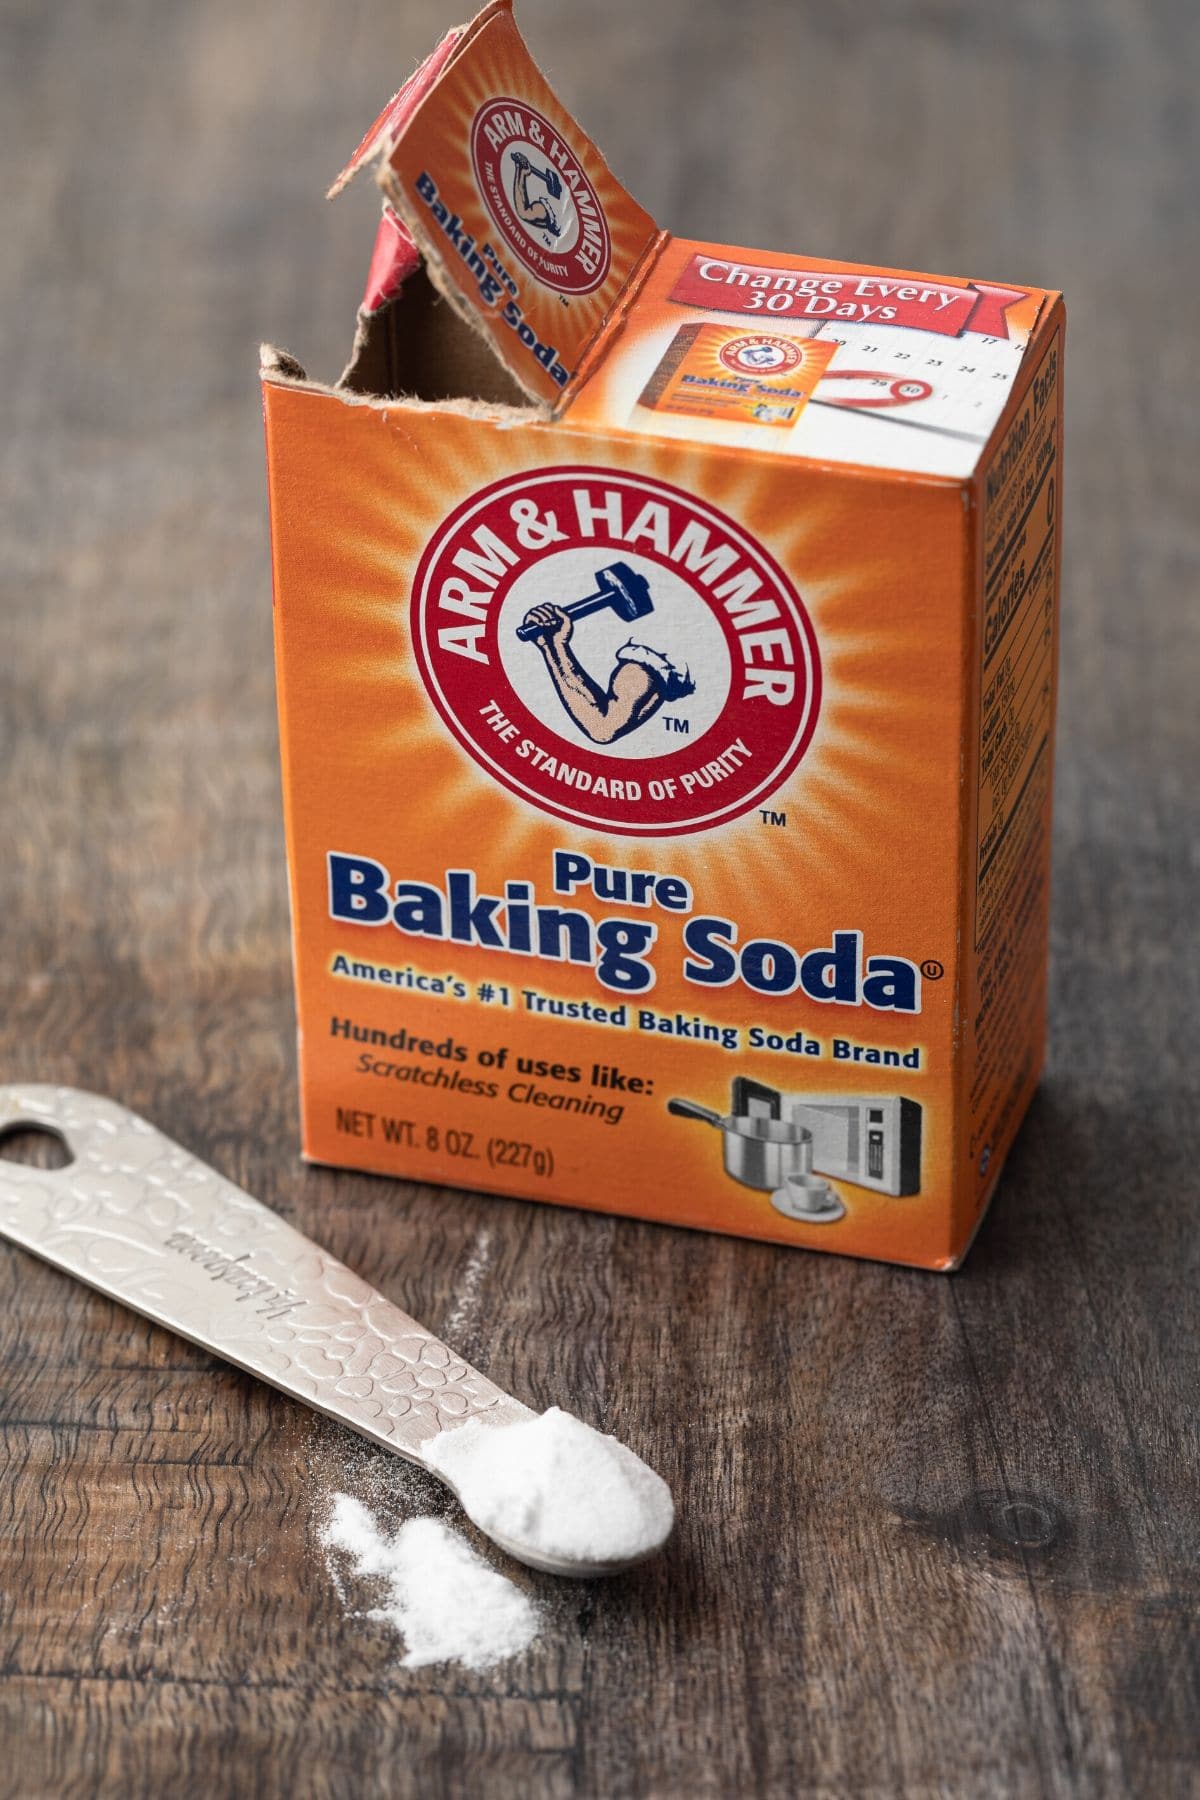 Is baking soda same as baking powder